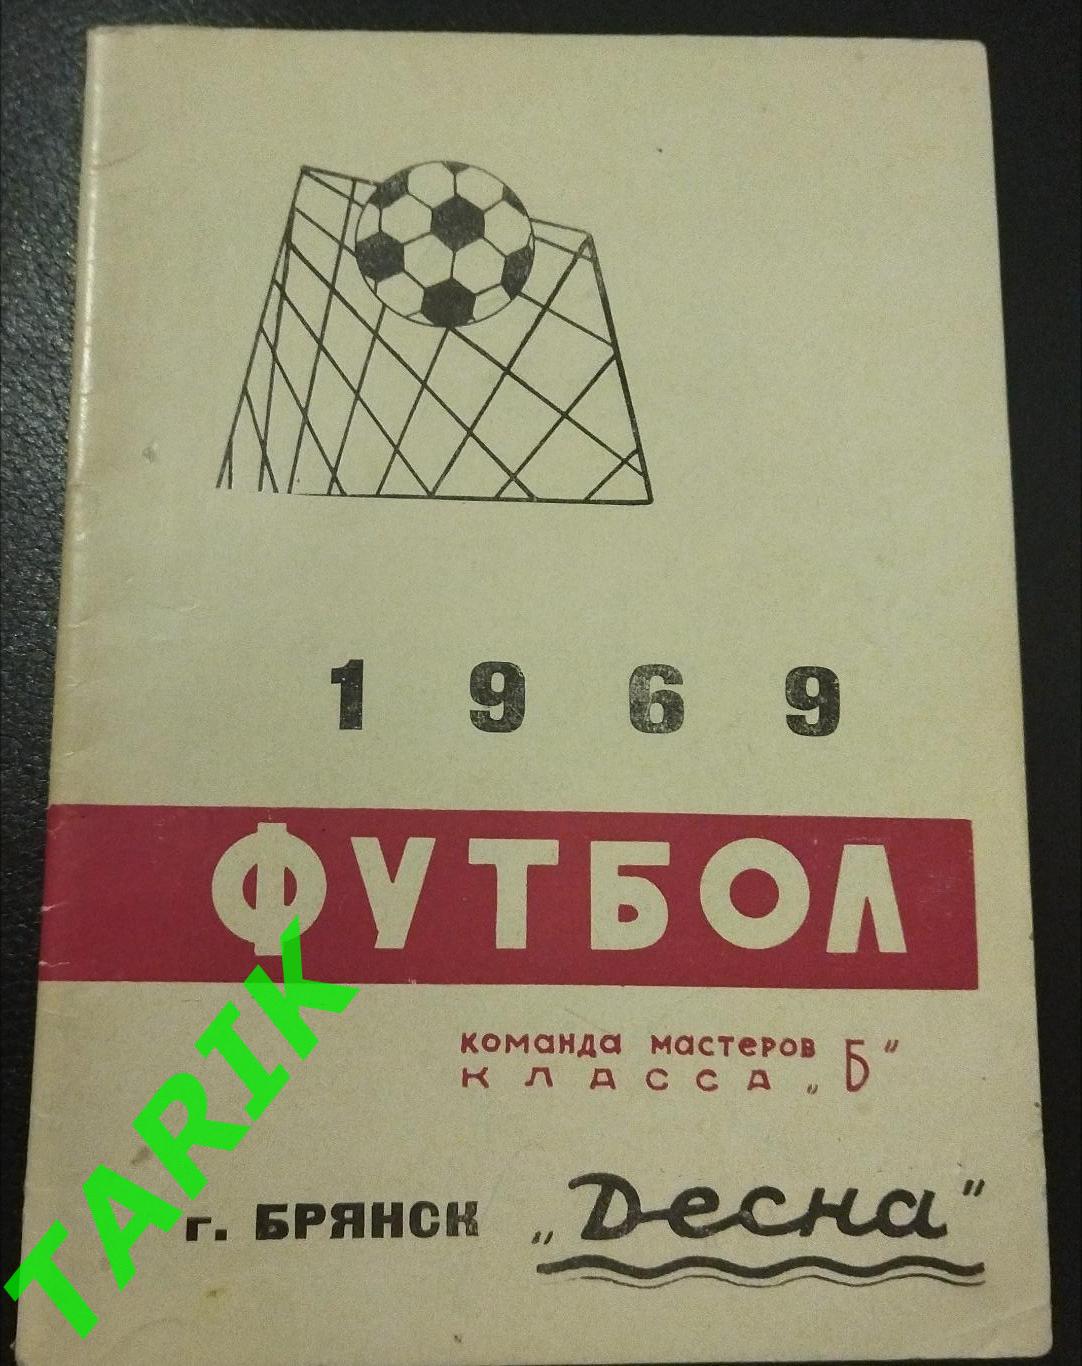 К/с -Десна Брянск 1969